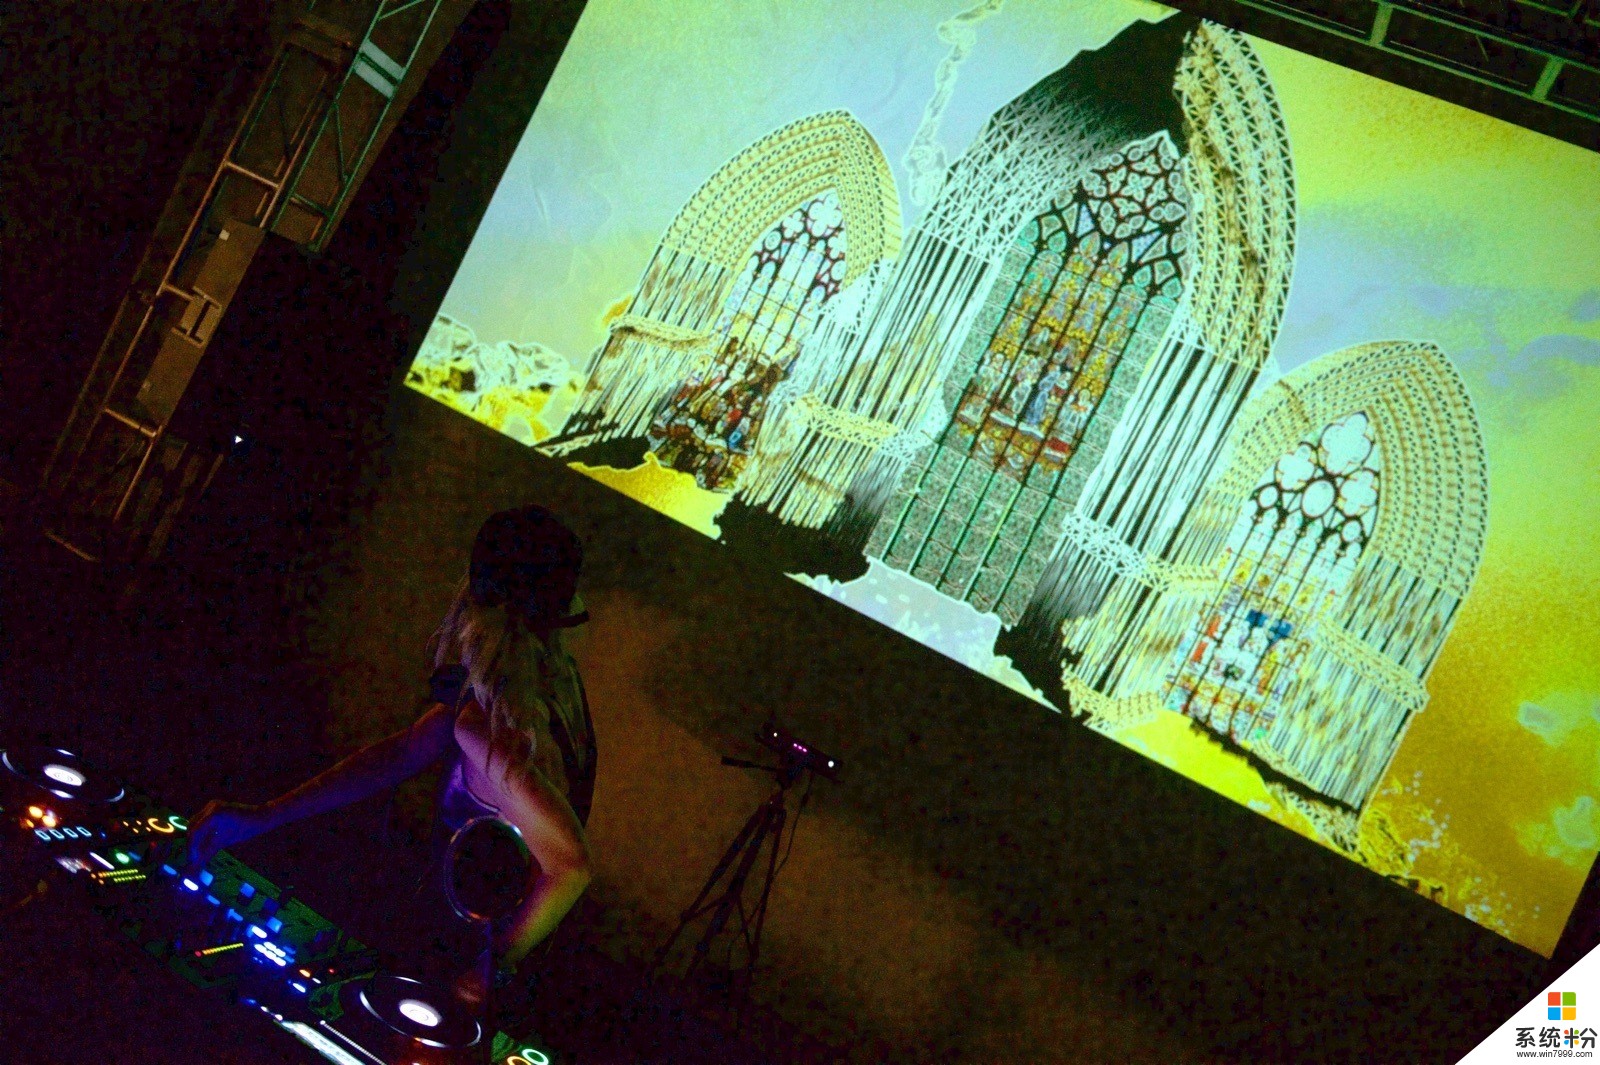 微软用 Surface Book 和 Kinect 为 DJ 的音乐演出带来了全新的视觉体验(8)